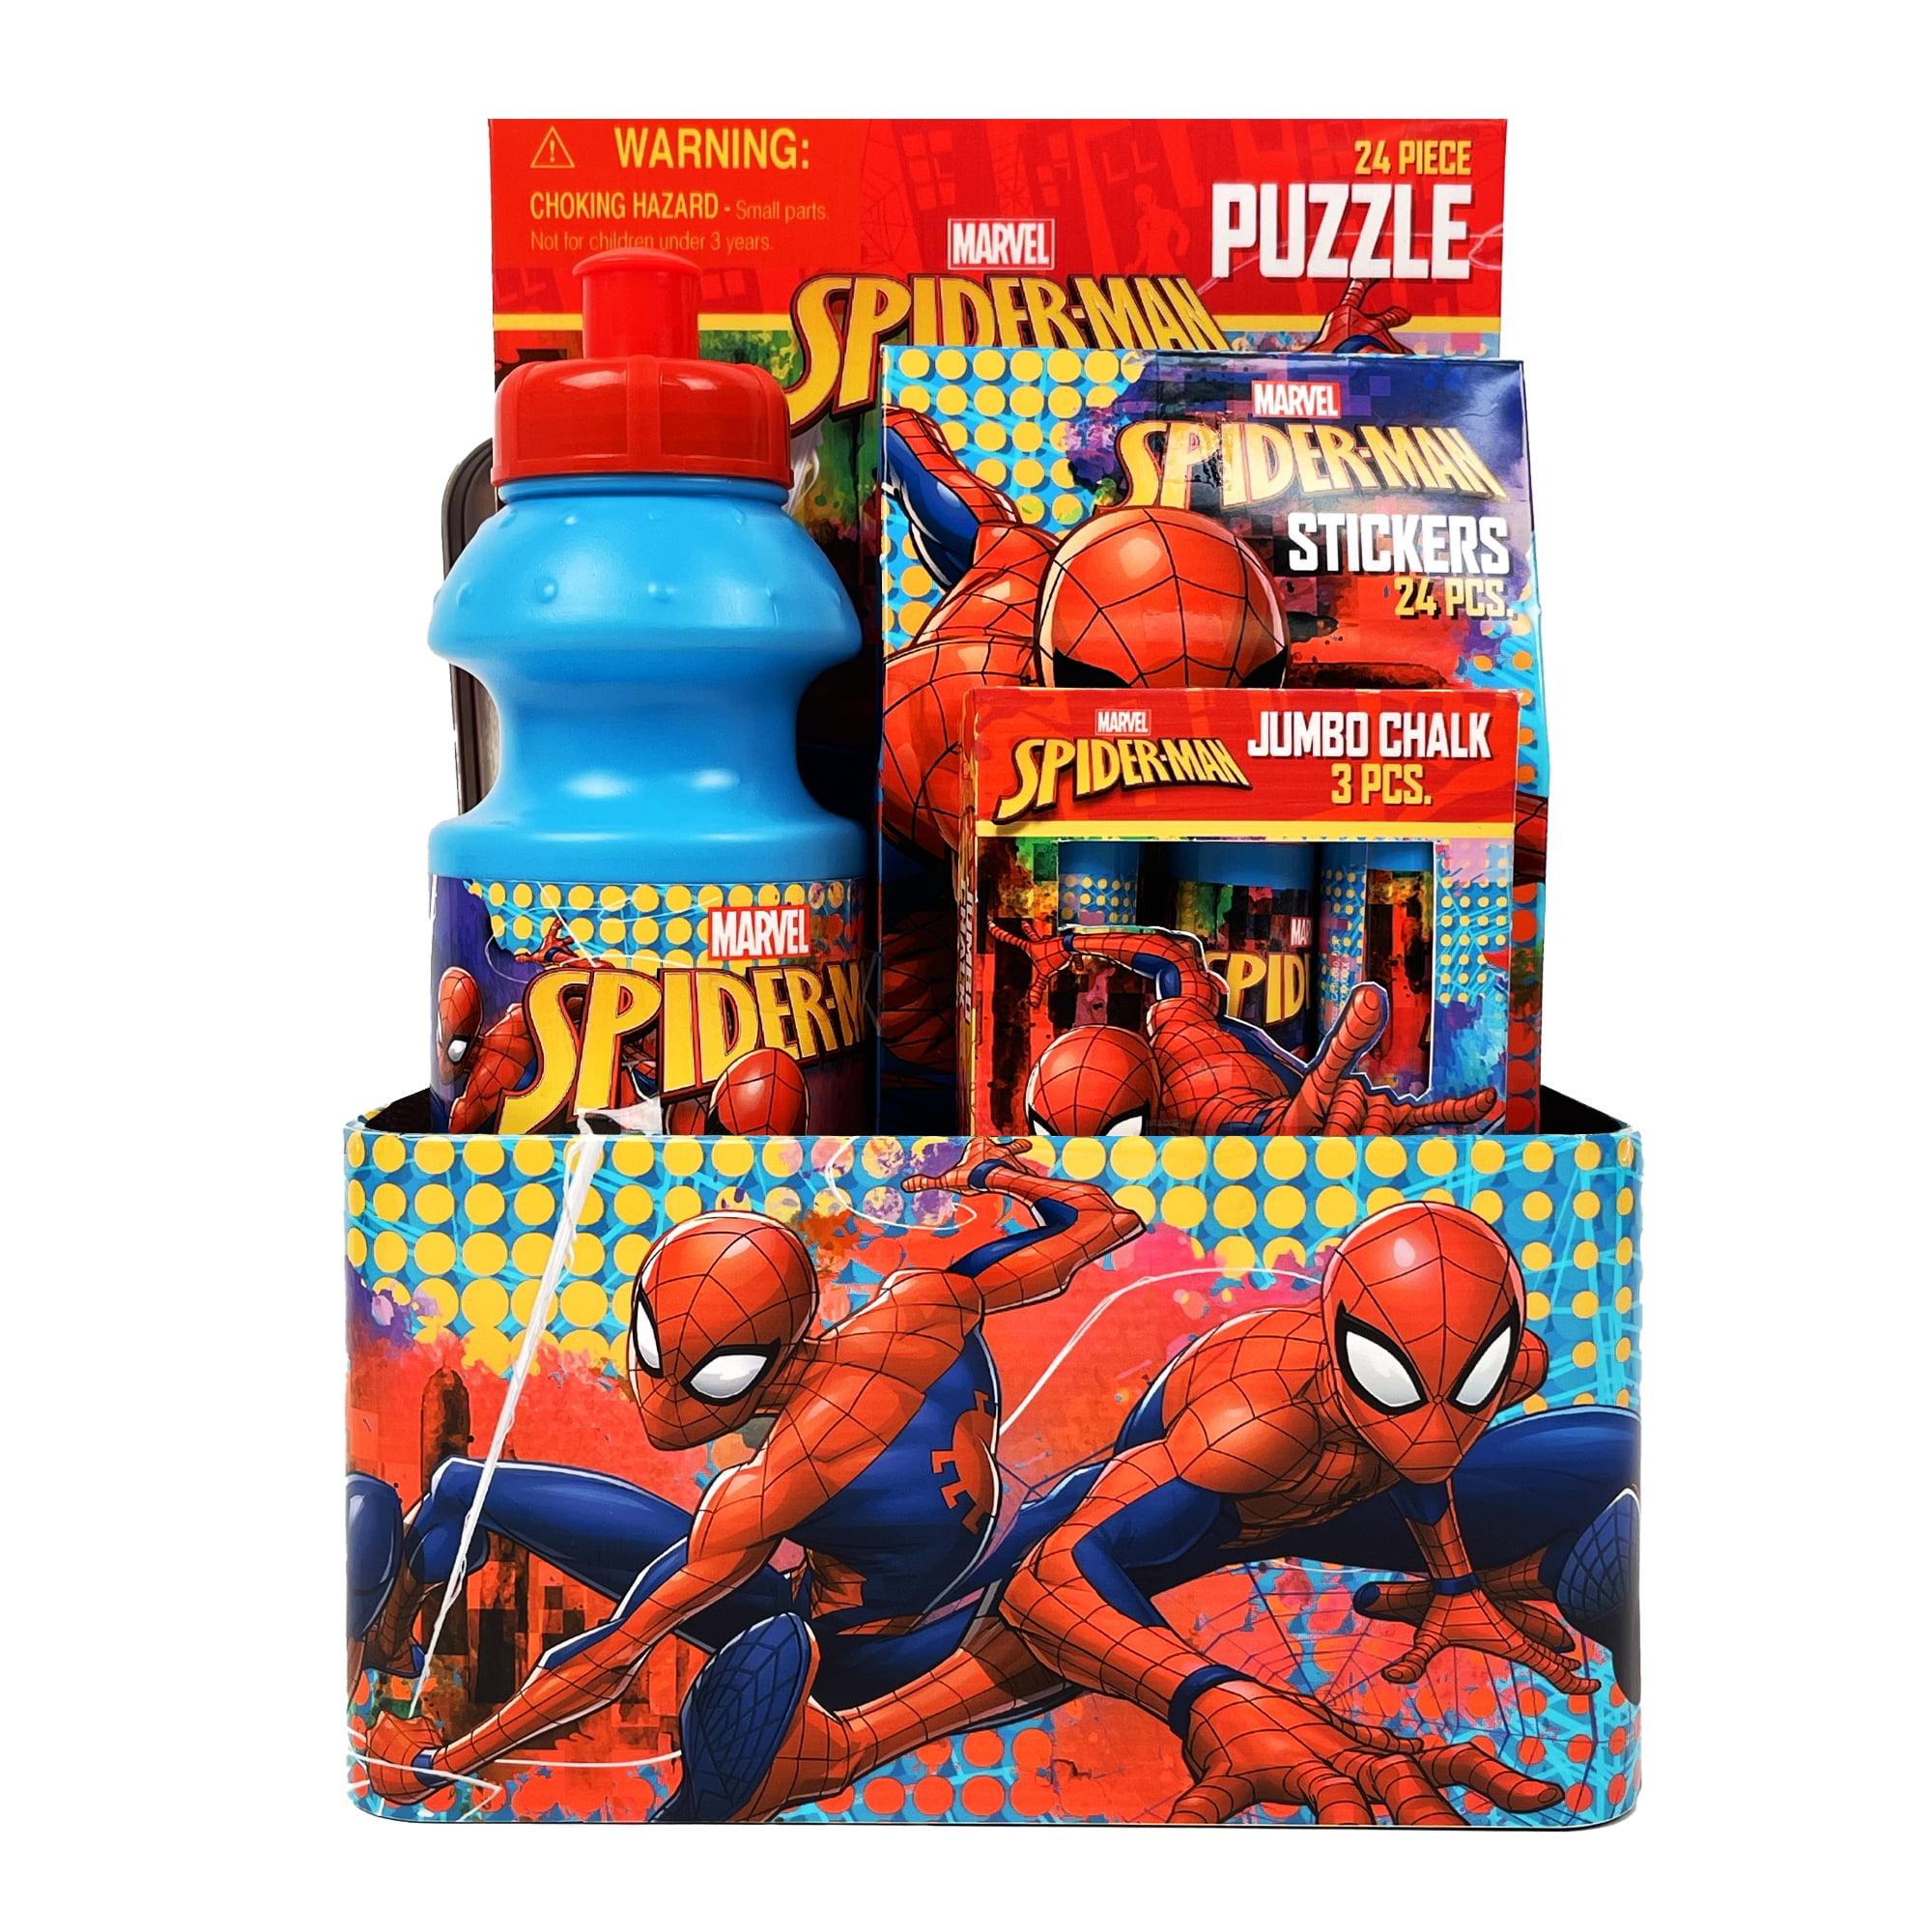 Spider-Man Spiderman Valentine's Day Tin Box Gift Set